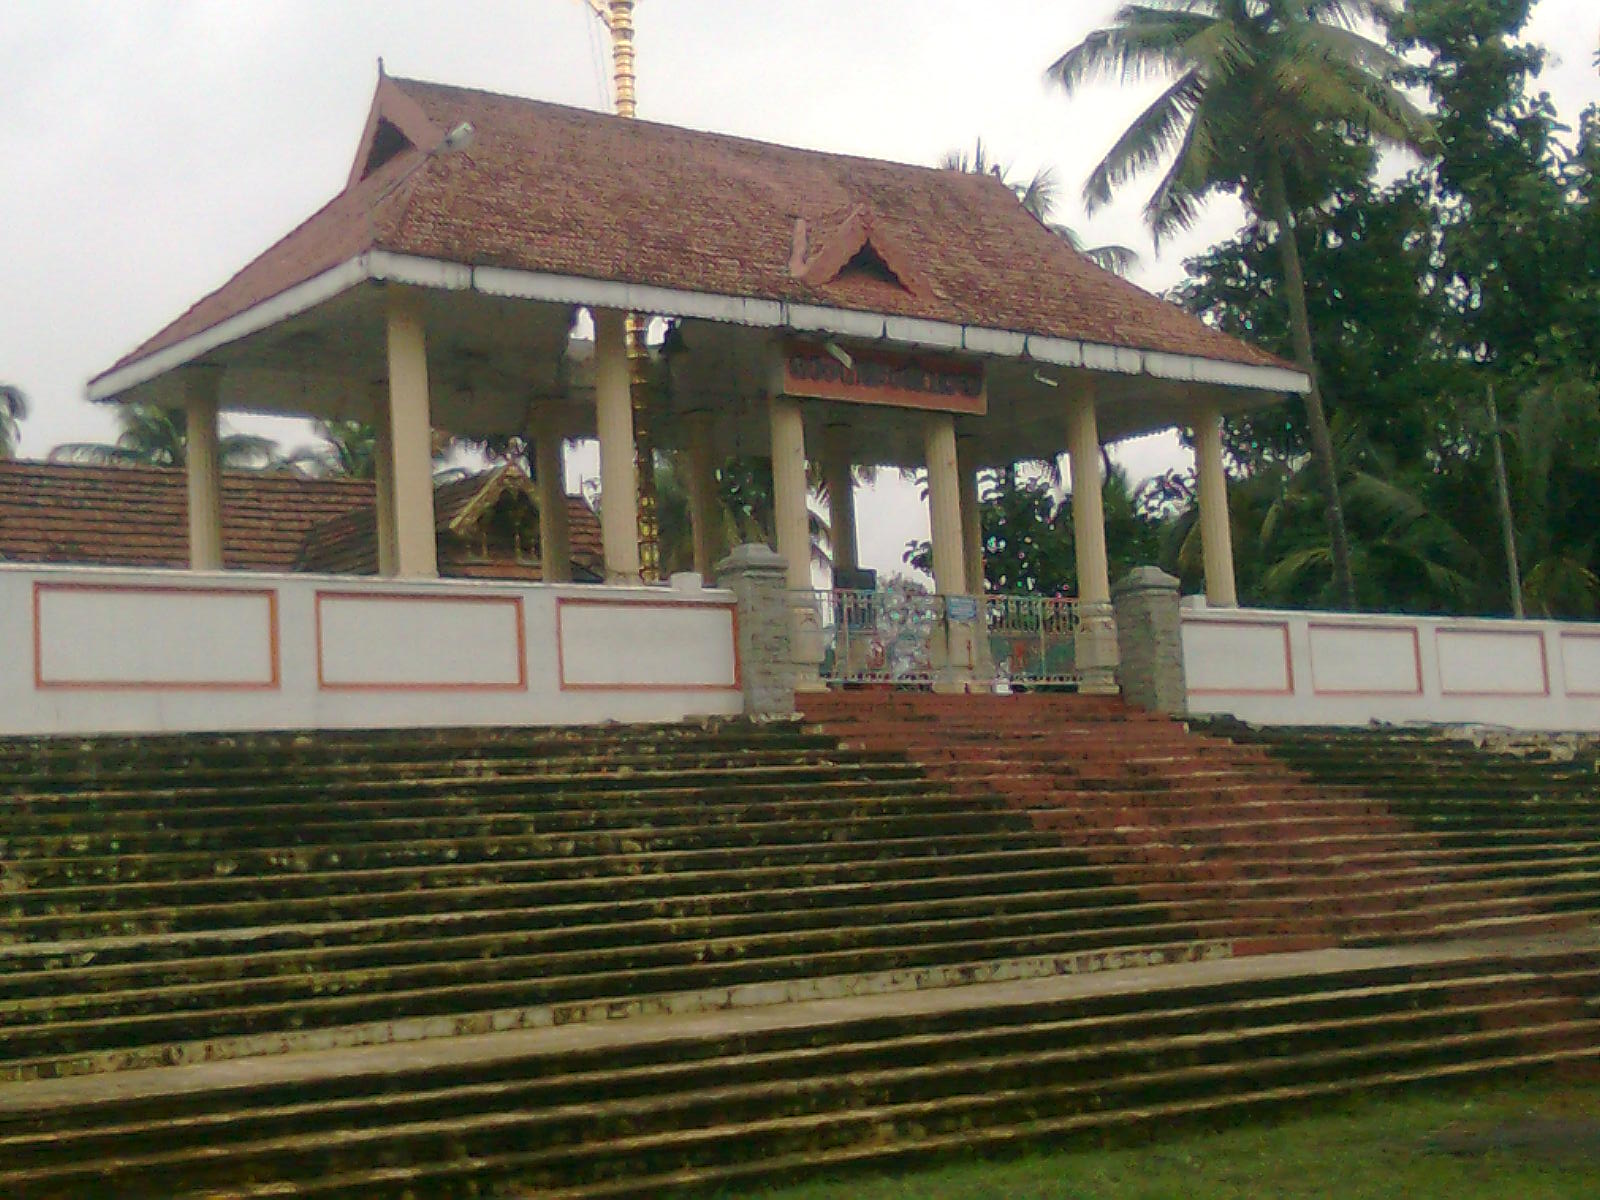 Poojas-velloorkunnam temple